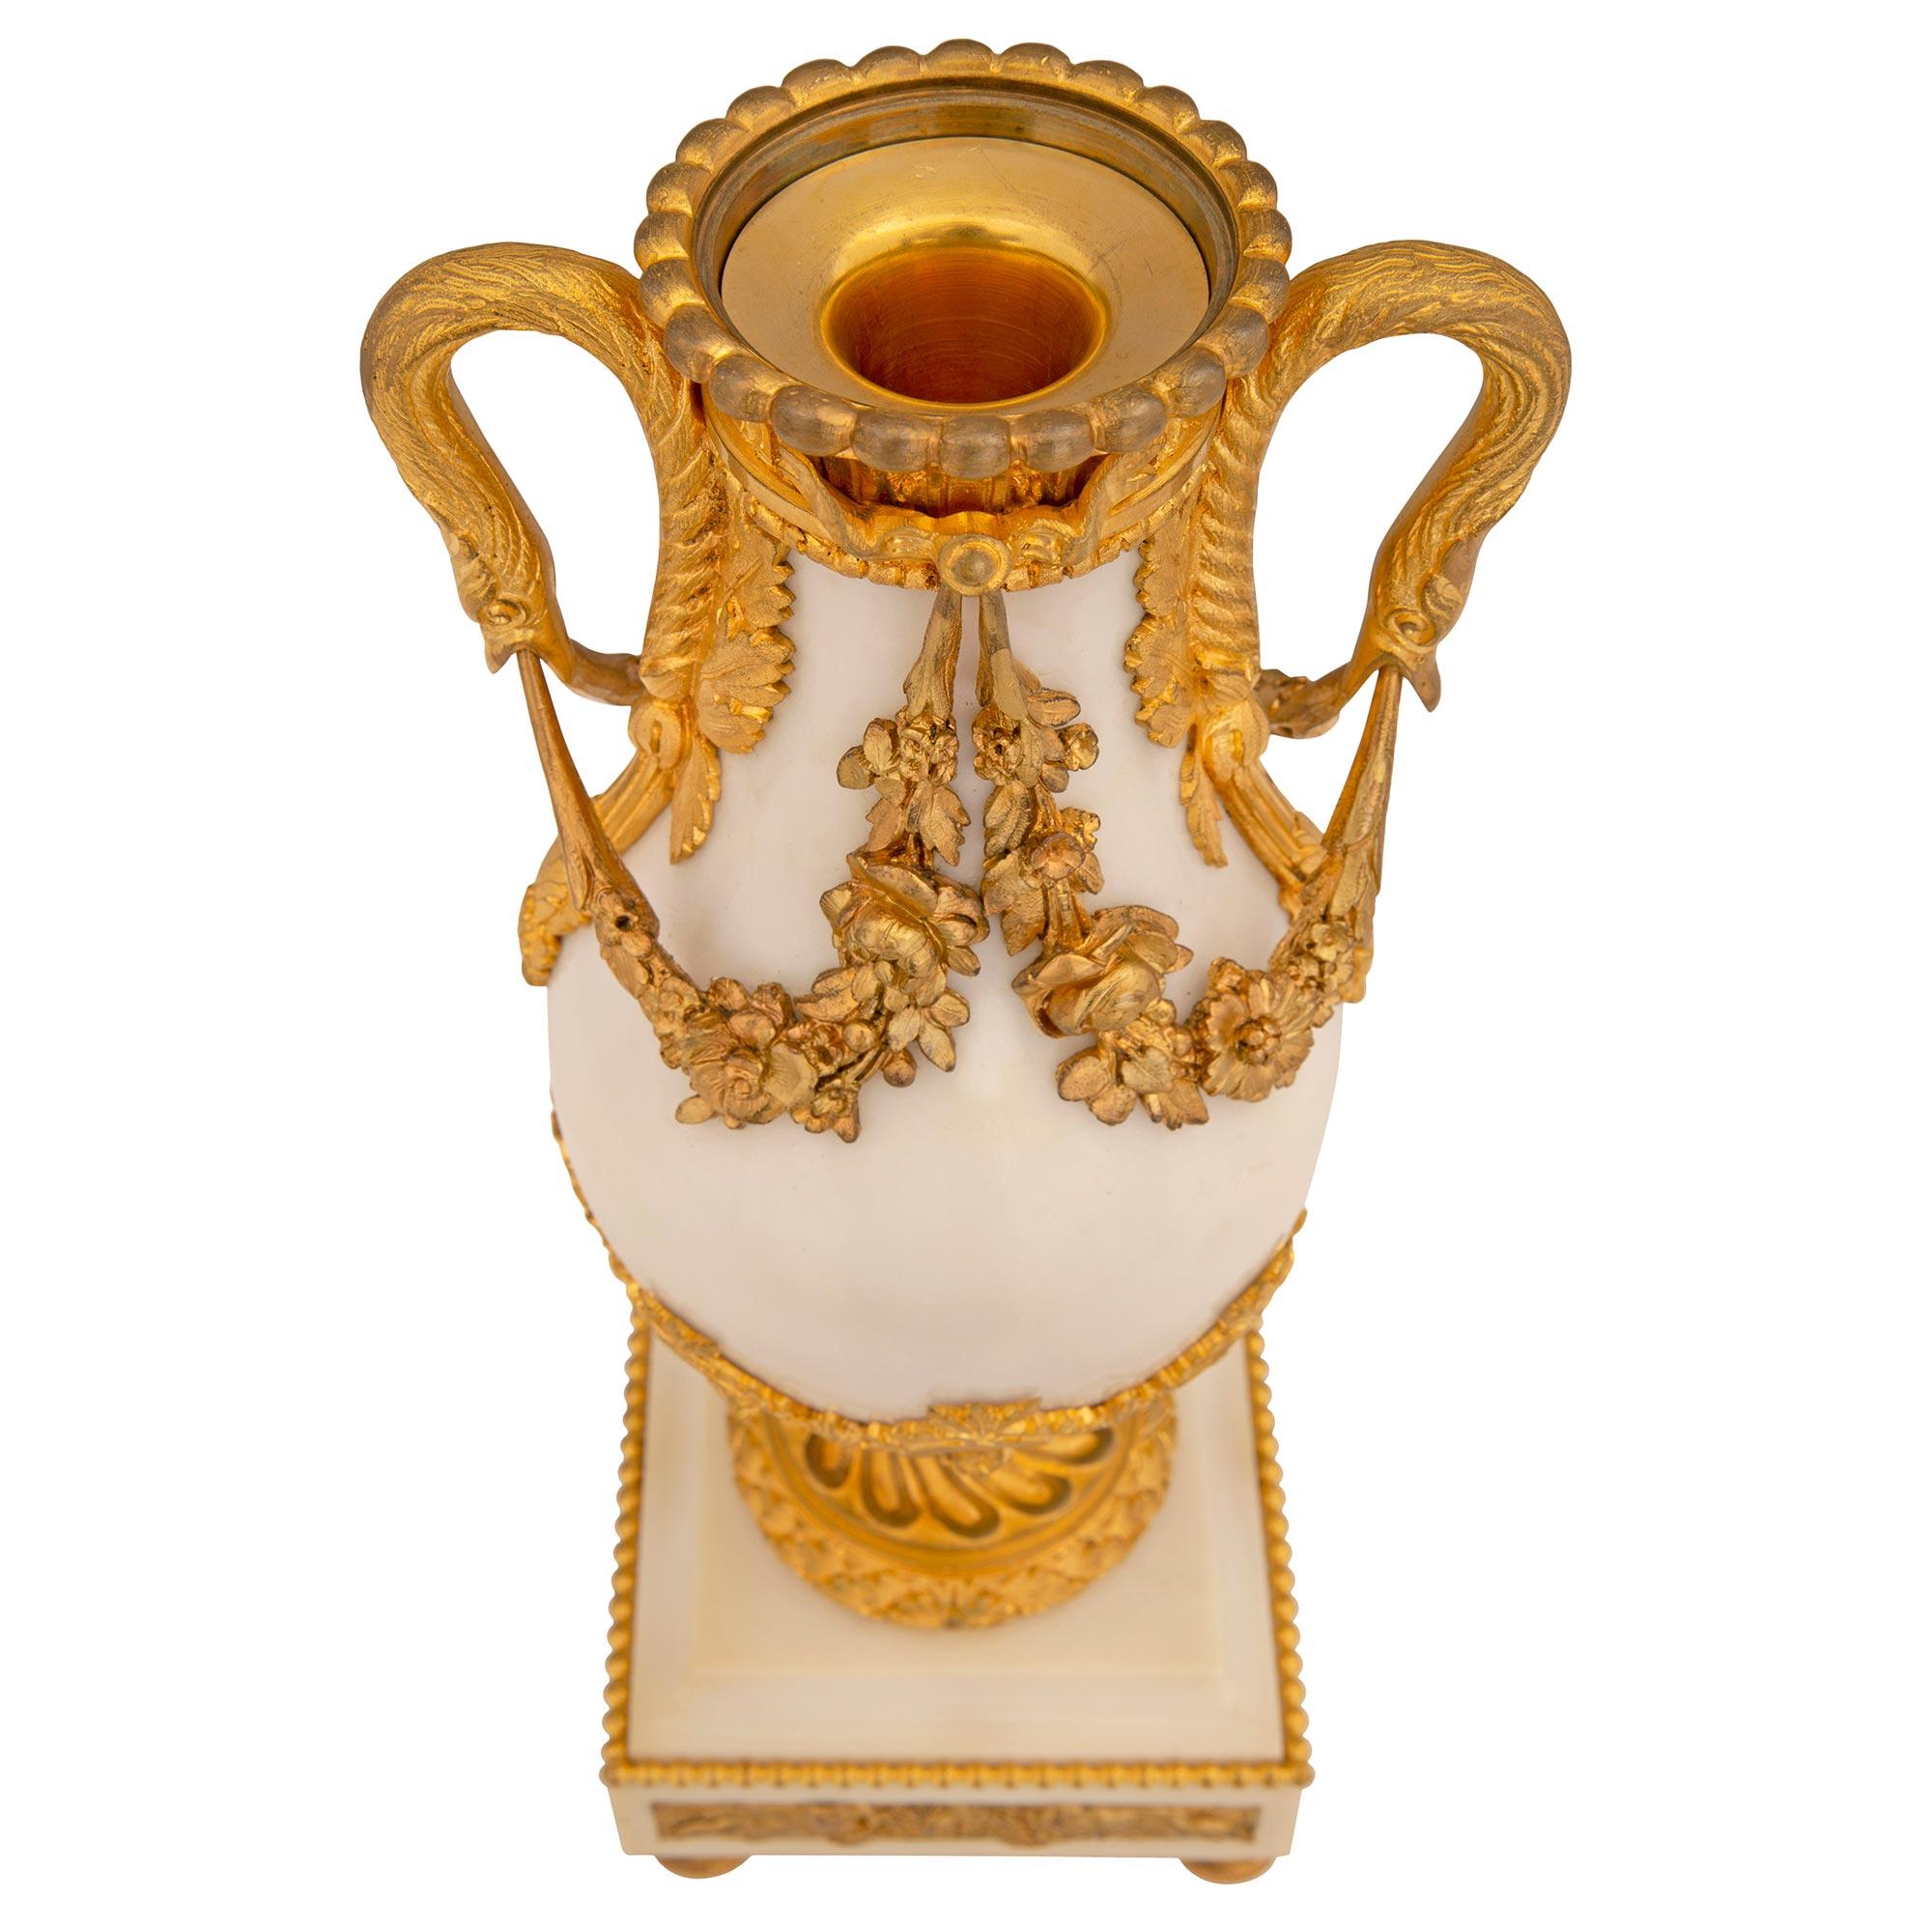 Superbe paire d'urnes françaises du XIXe siècle de style Louis XVI en marbre blanc de Carrare et cassolette en bronze doré. Chaque urne est surélevée par d'élégants pieds en bronze doré en forme de topie sous la base carrée en marbre de Carrare